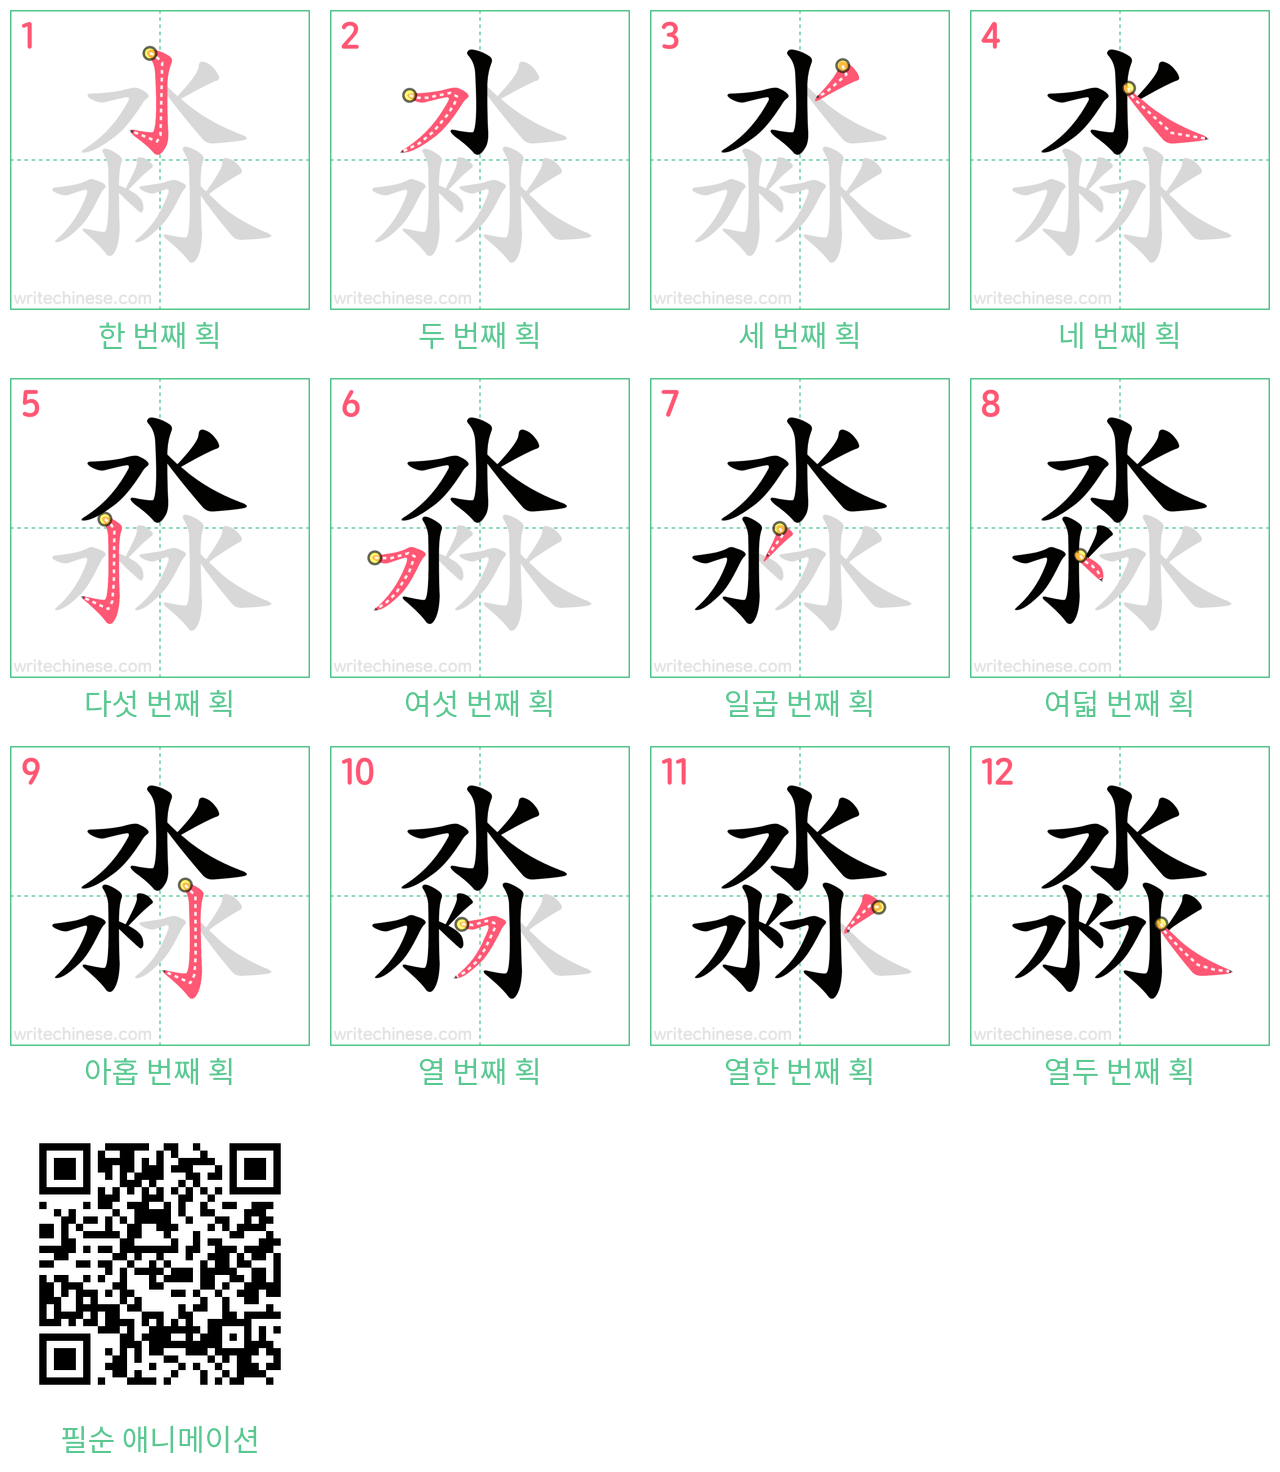 淼 step-by-step stroke order diagrams